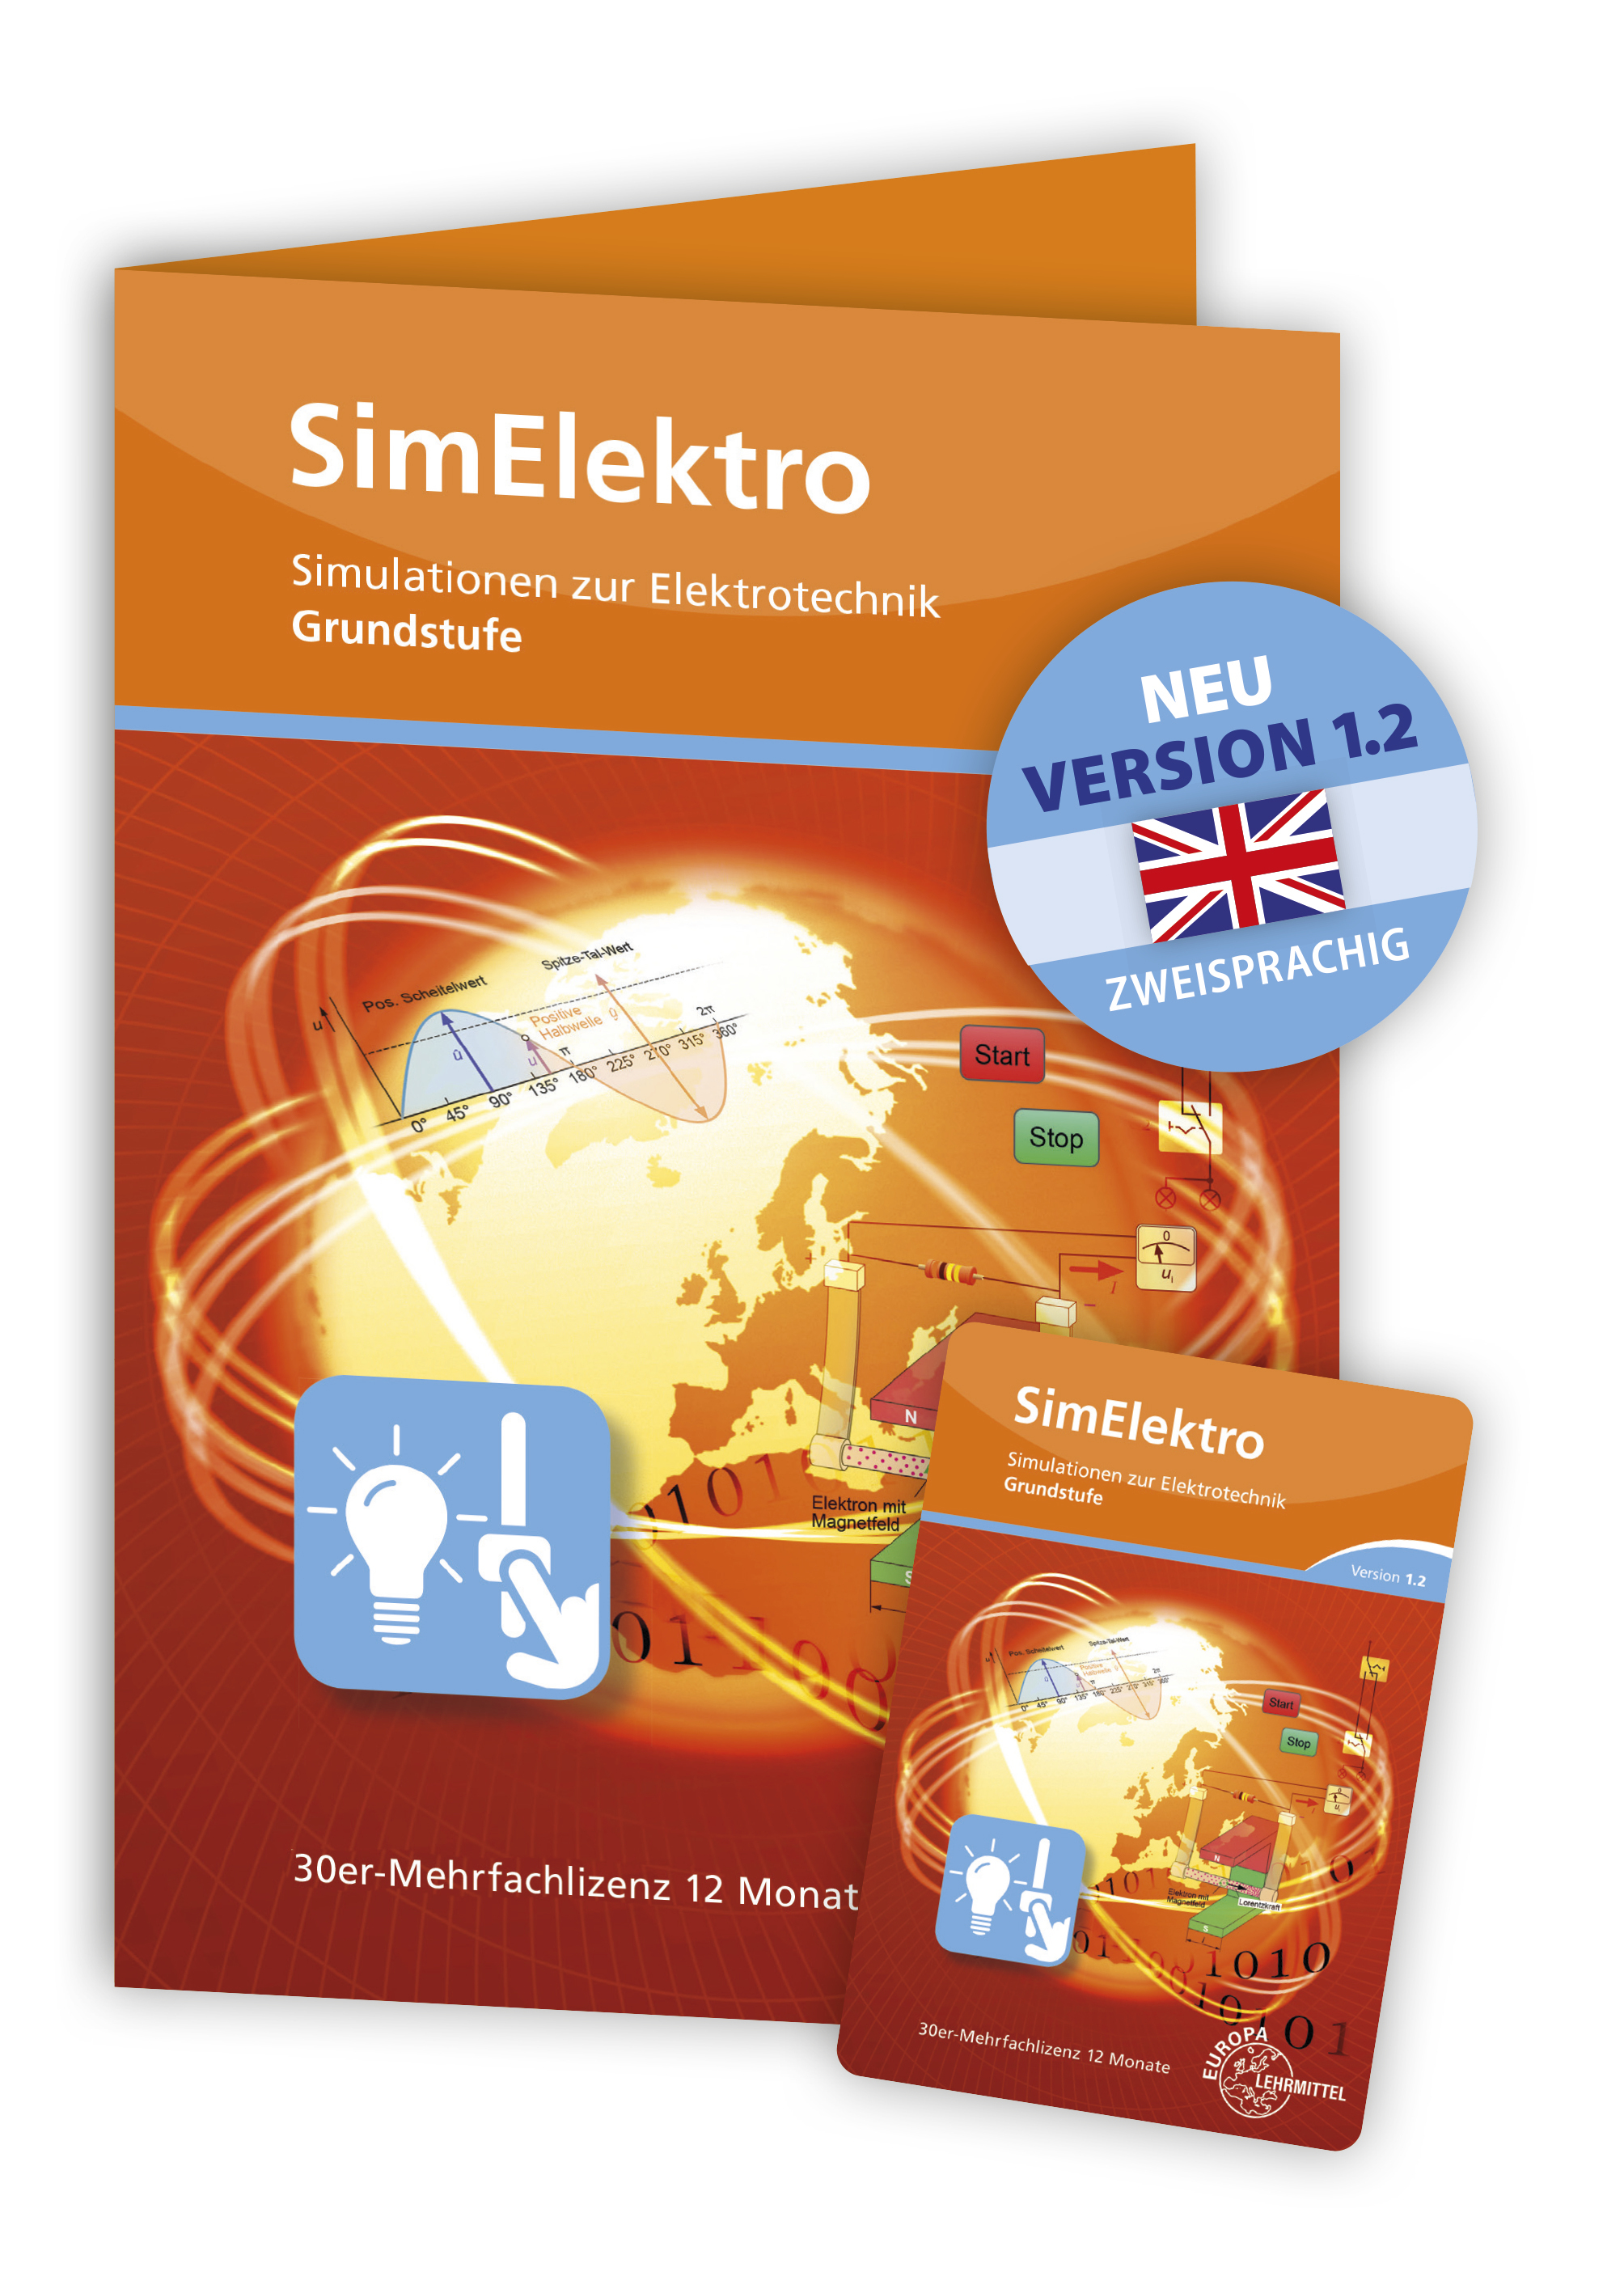 SimElektro - Grundstufe 1.2 - Simulationen zur Elektrotechnik - Freischaltcode auf Keycard - 30er Mehrfachlizenz